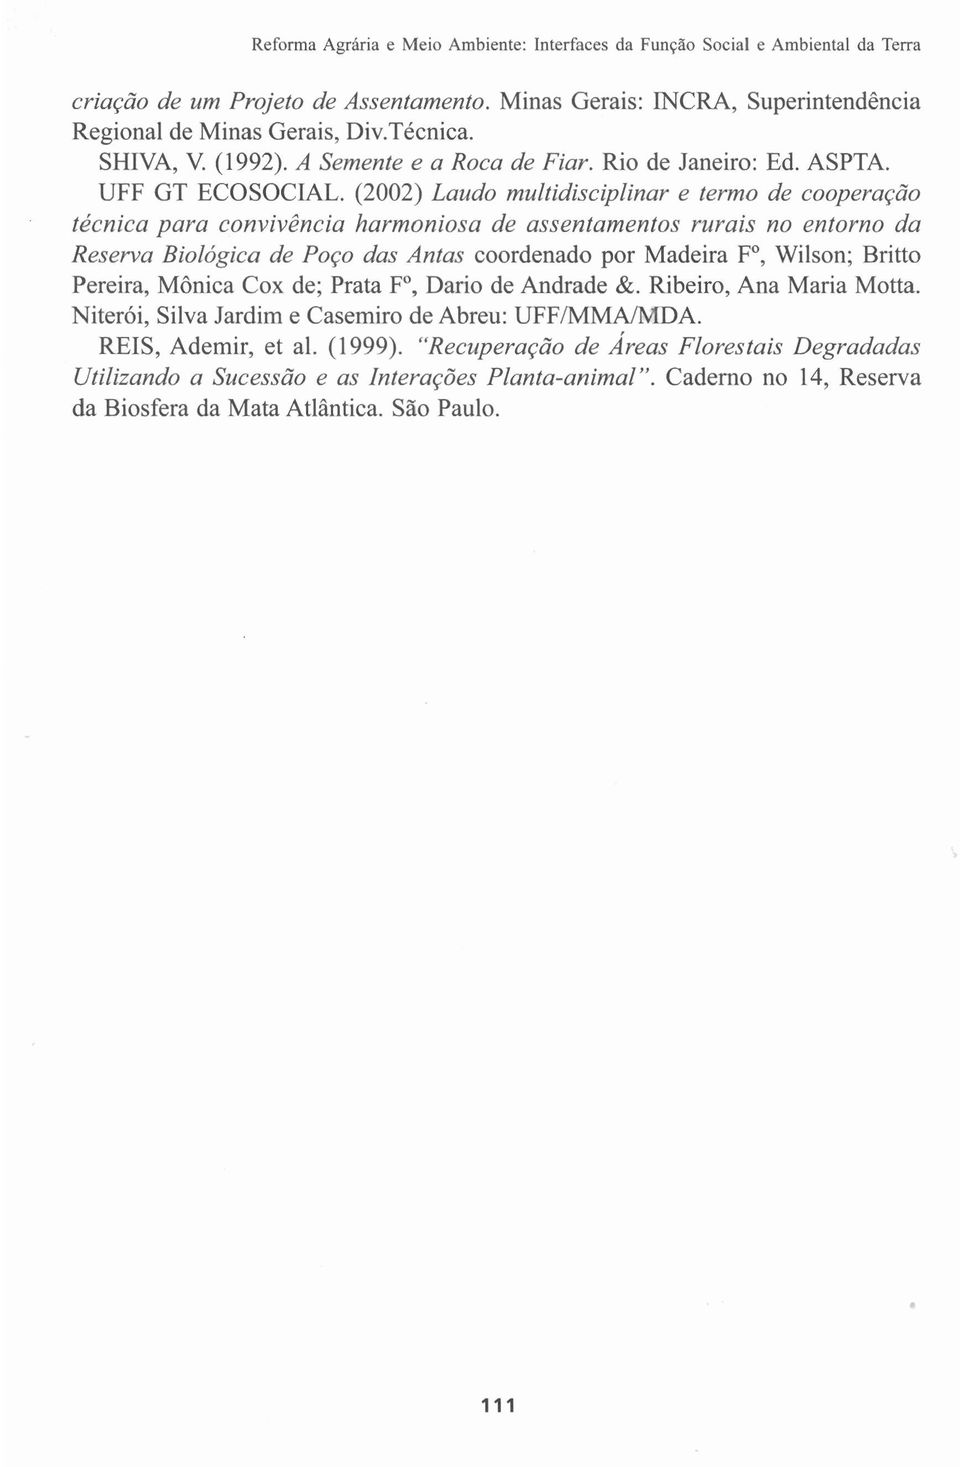 (2002) Laudo multidisciplinar e termo de cooperação técnica para convivência harmoniosa de assentamentos rurais no entorno da Reserva Biológica de Poço das Antas coordenado por Madeira FO, Wilson;